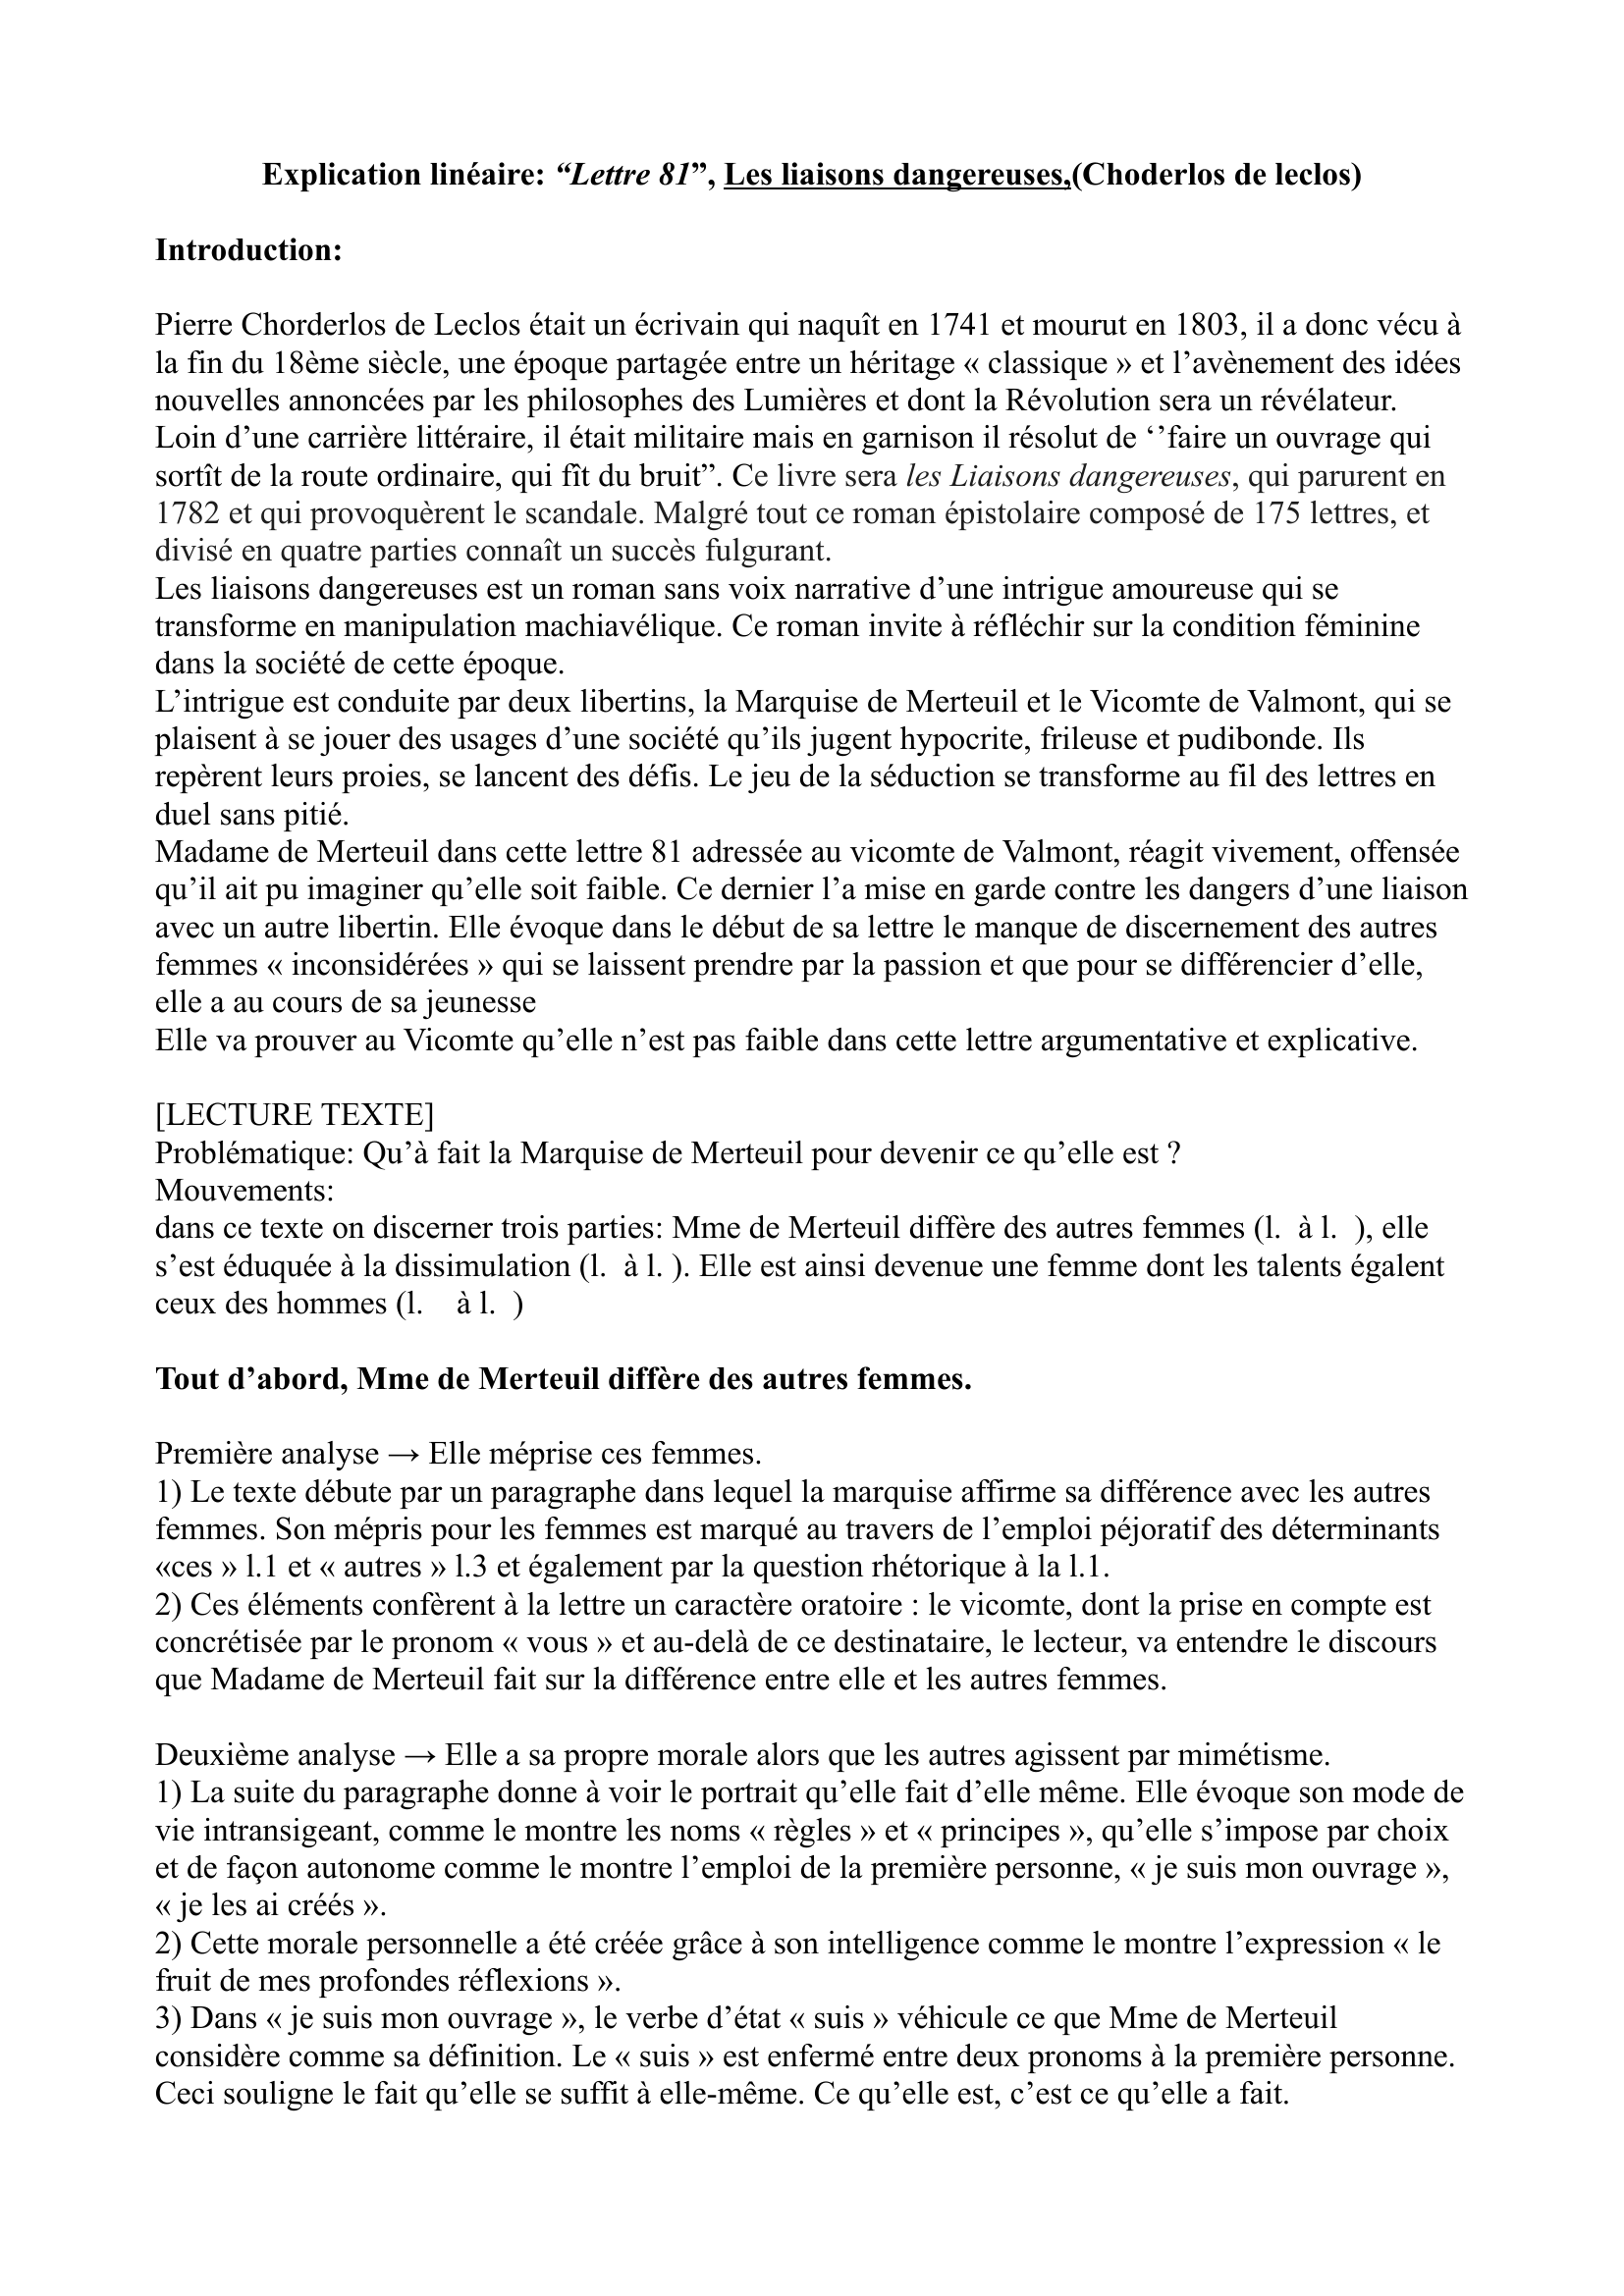 Prévisualisation du document explication linéaire lettre 81  dans les liaisons dangereuses de CHODERLOS DE LECLOS